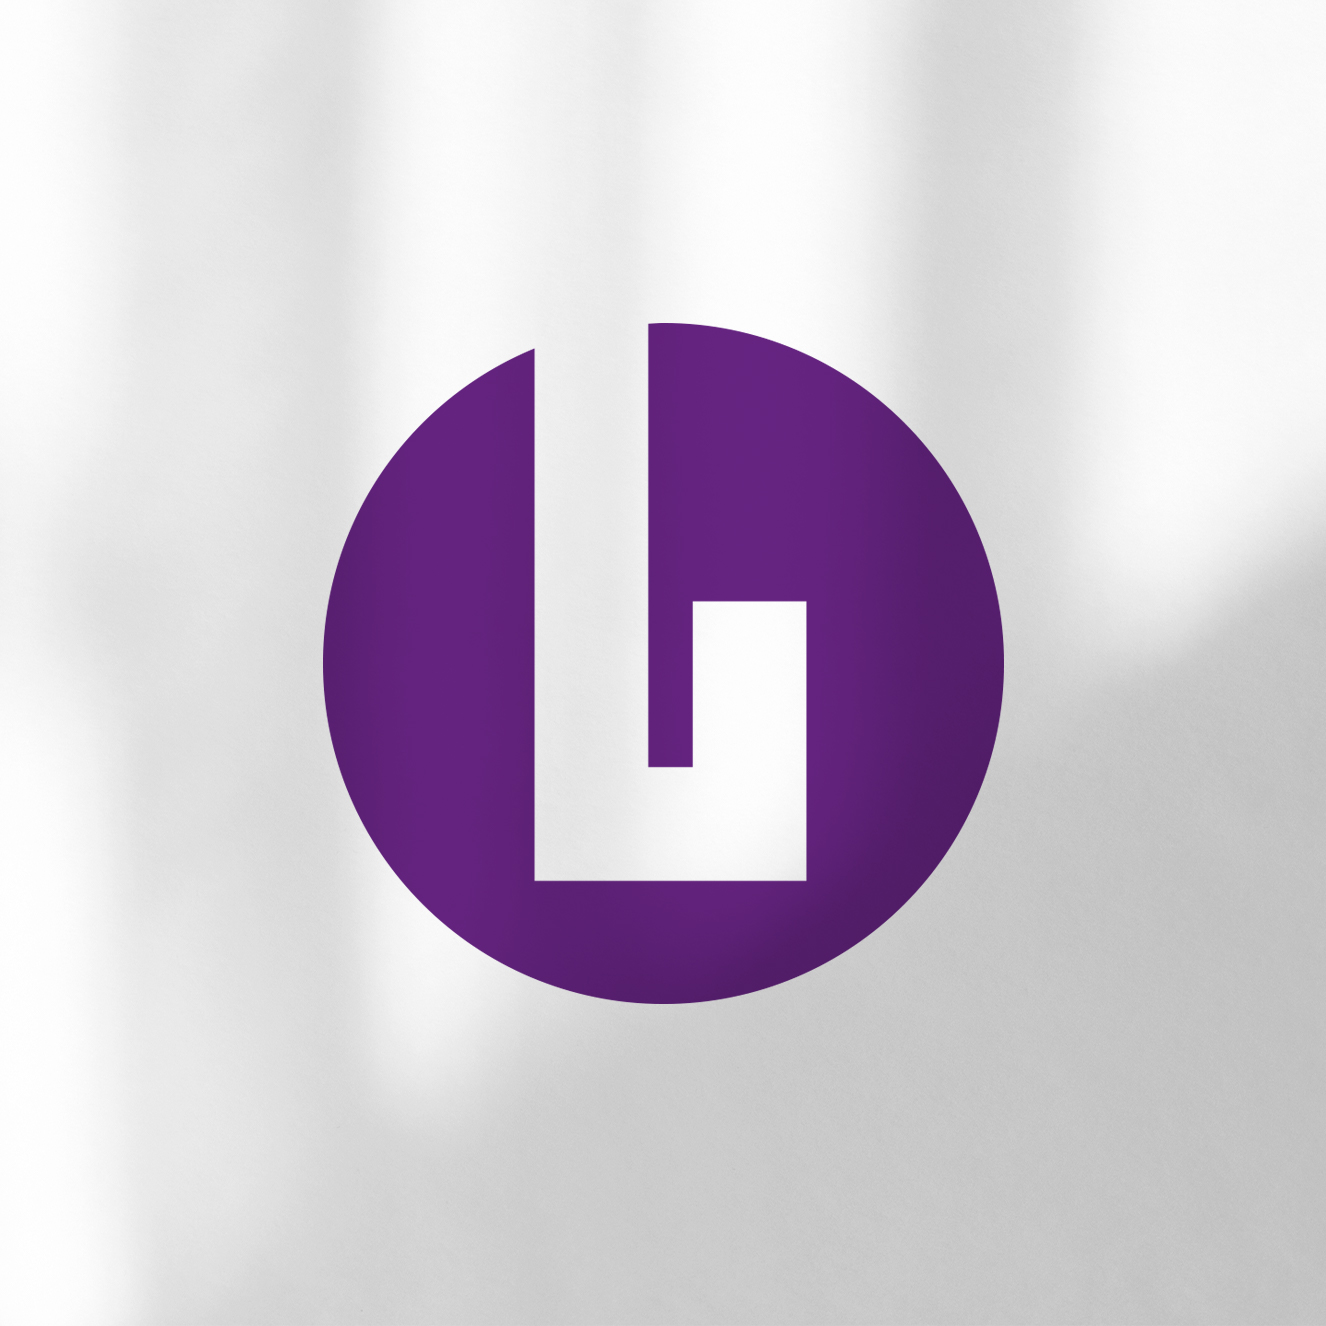 Leinen-Lotte Naming und Corporate Design Bild-Marke